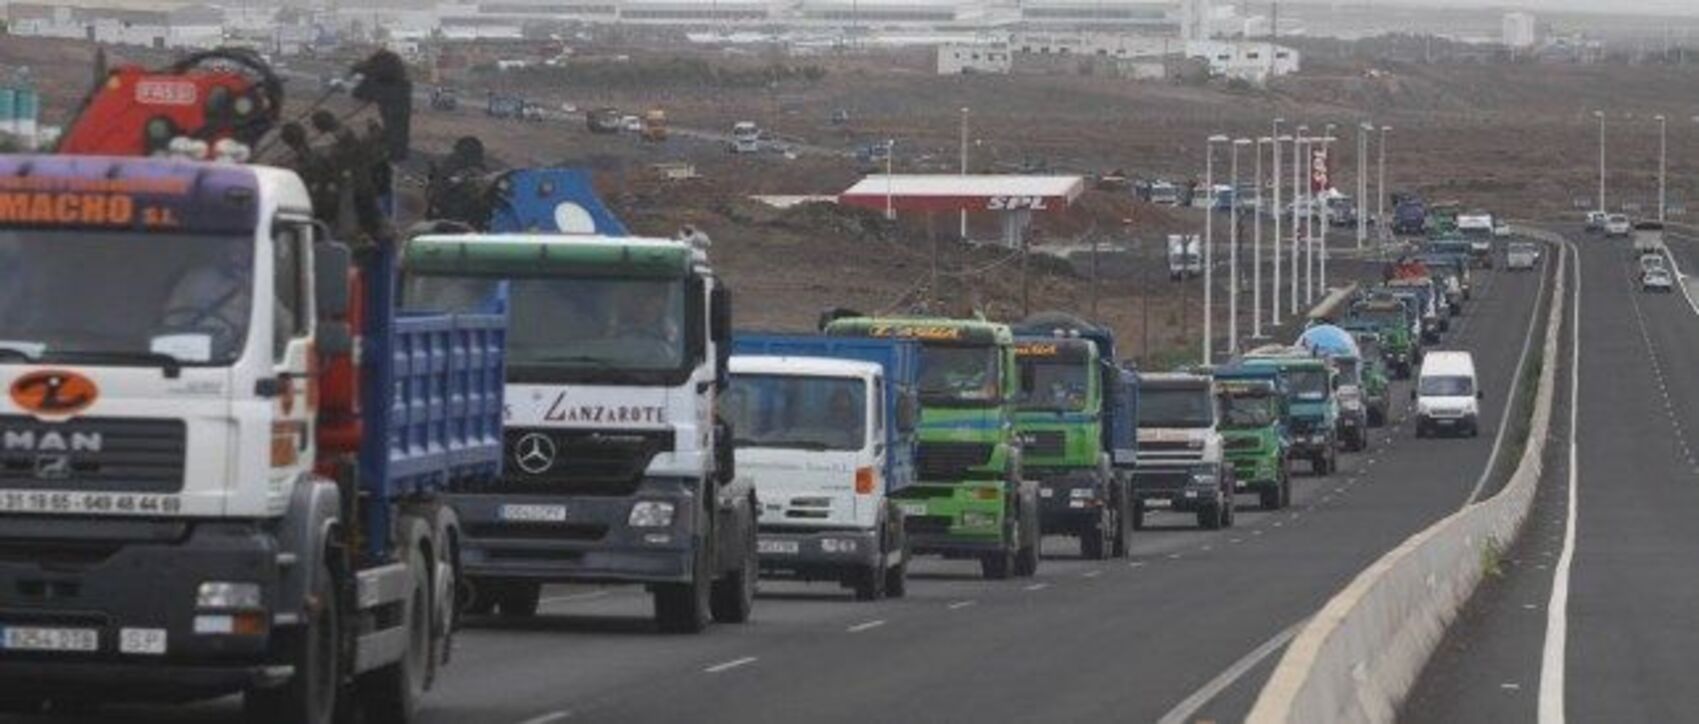 Camiones circulando en Lanzarote